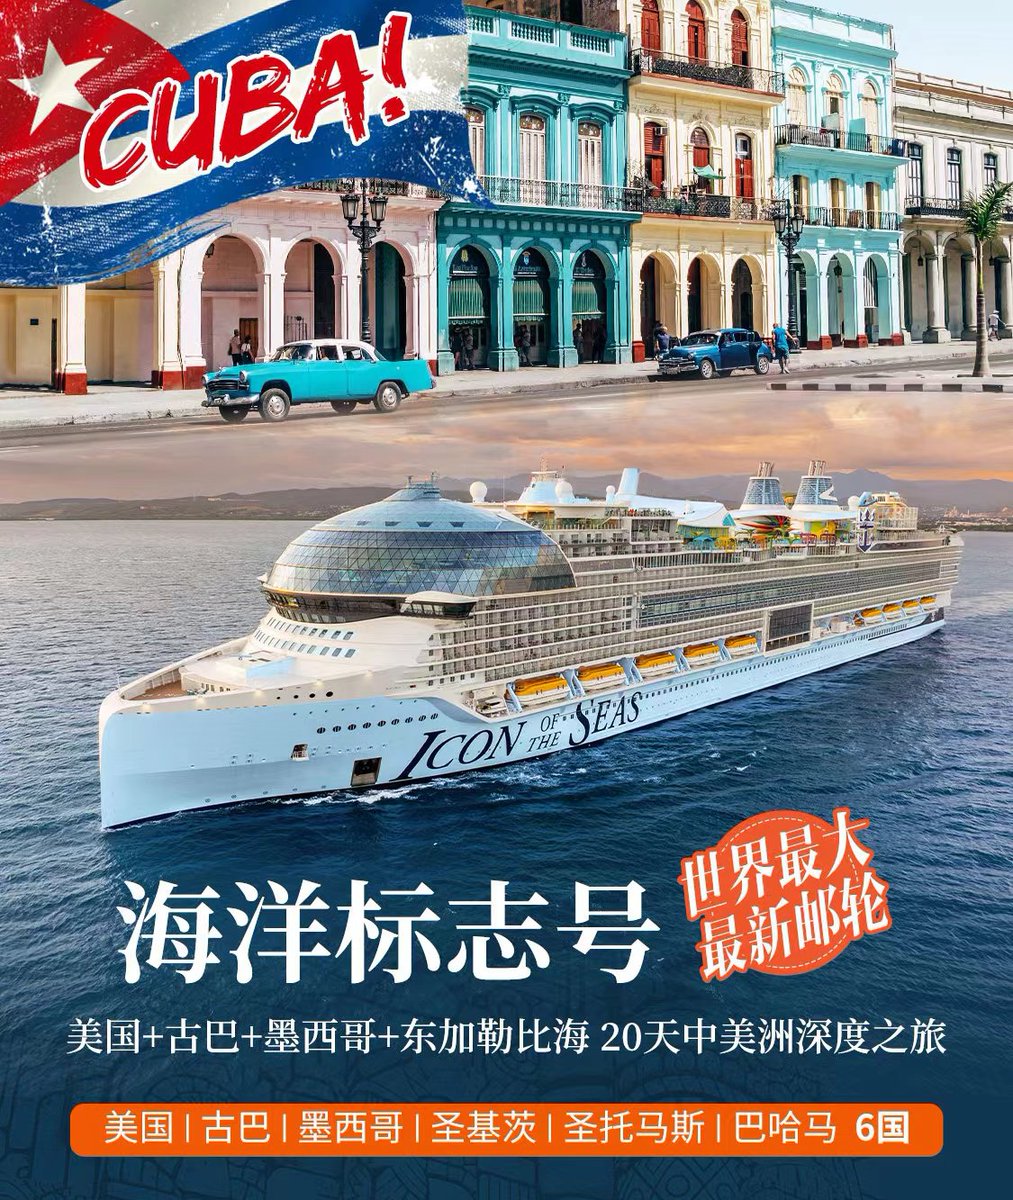 Cónsul general de #Cuba, Mileidy Aguirre, recibió al gerente gral, Zhang Wenqi, de la compañía Shanghai Chuanba, que se centra en los viajes de cruceros en el Caribe y otros destinos de gran atracción para el turismo chino. @MinturCuba @CubaMINREX @EmbacubaChina @AlbertoBlancoS